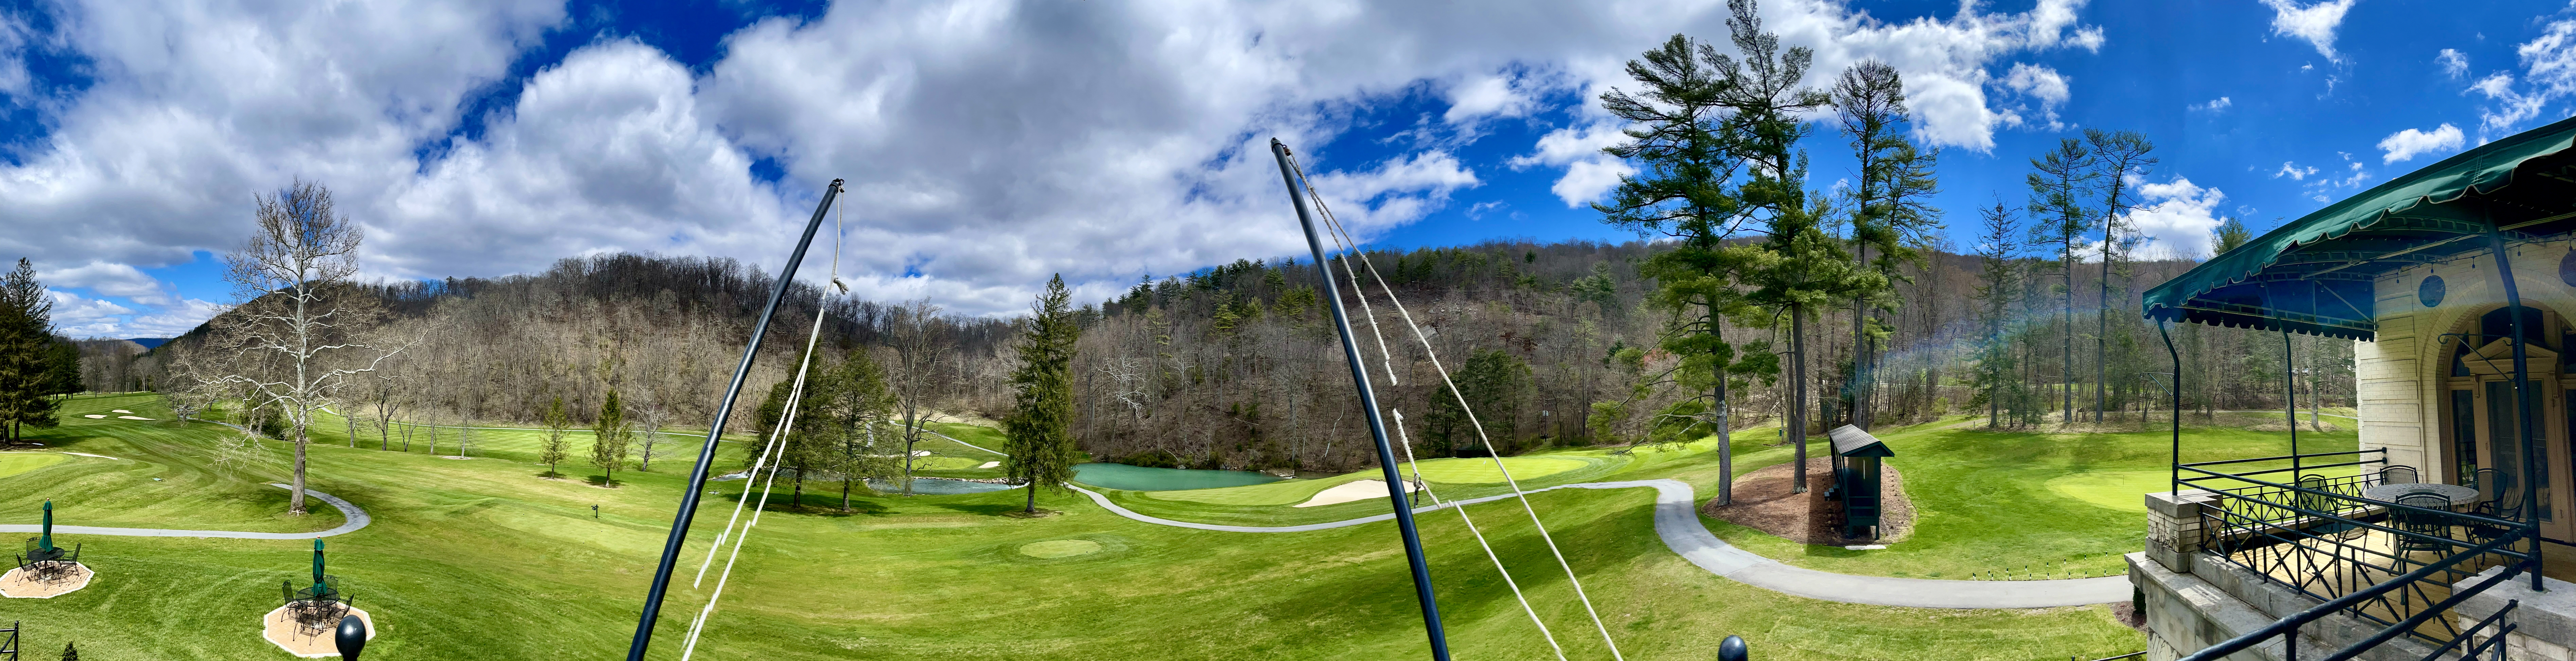 The Omni Homestead golf course 